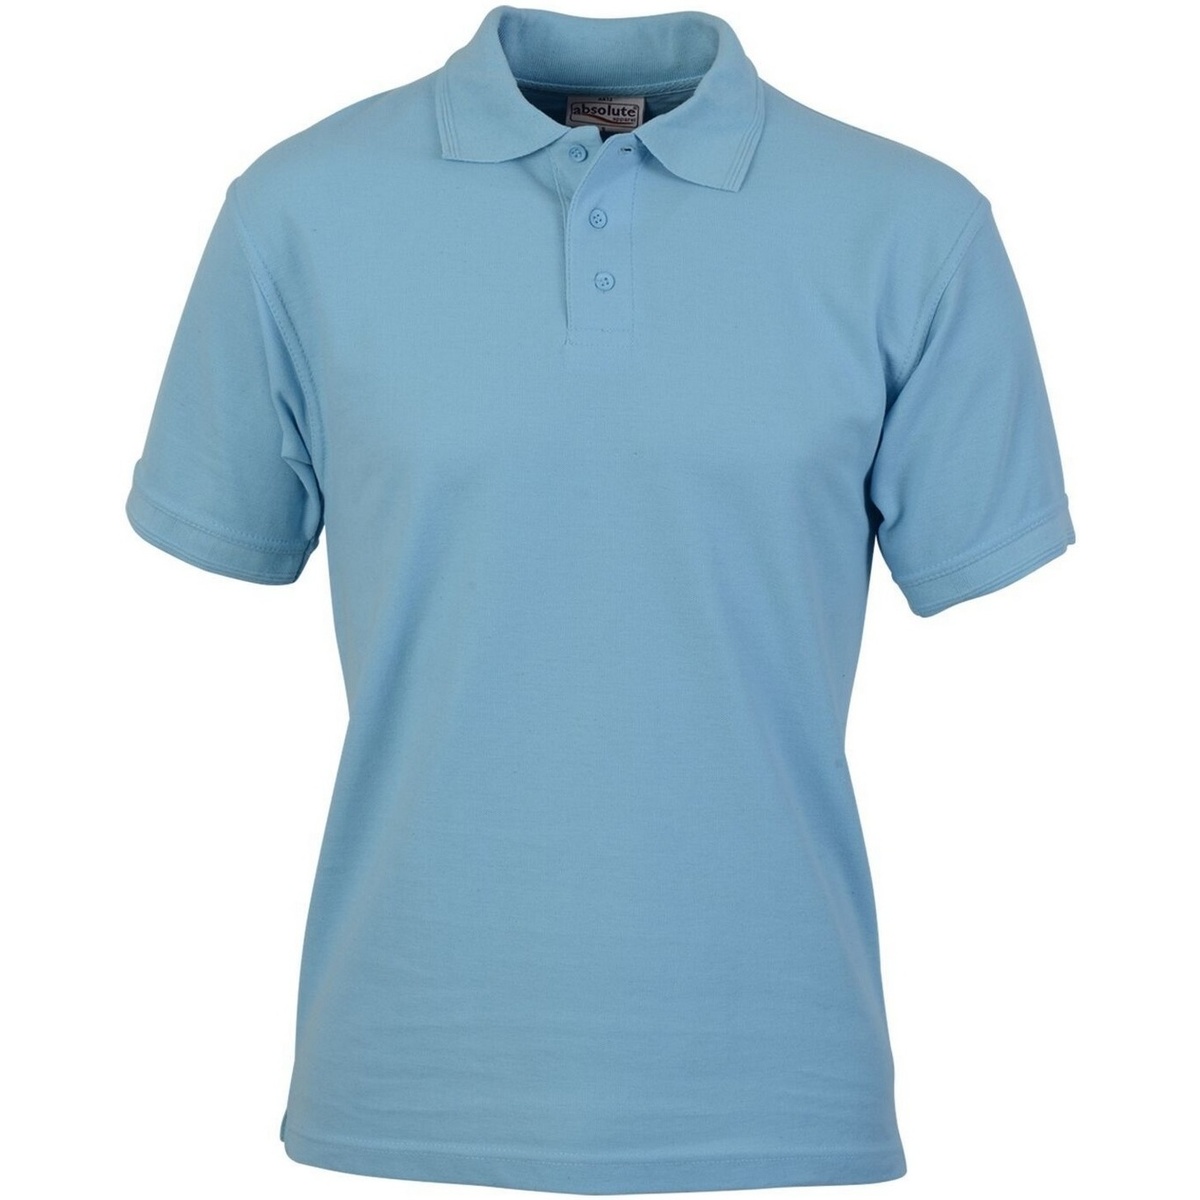 textil Hombre Tops y Camisetas Absolute Apparel Precision Azul